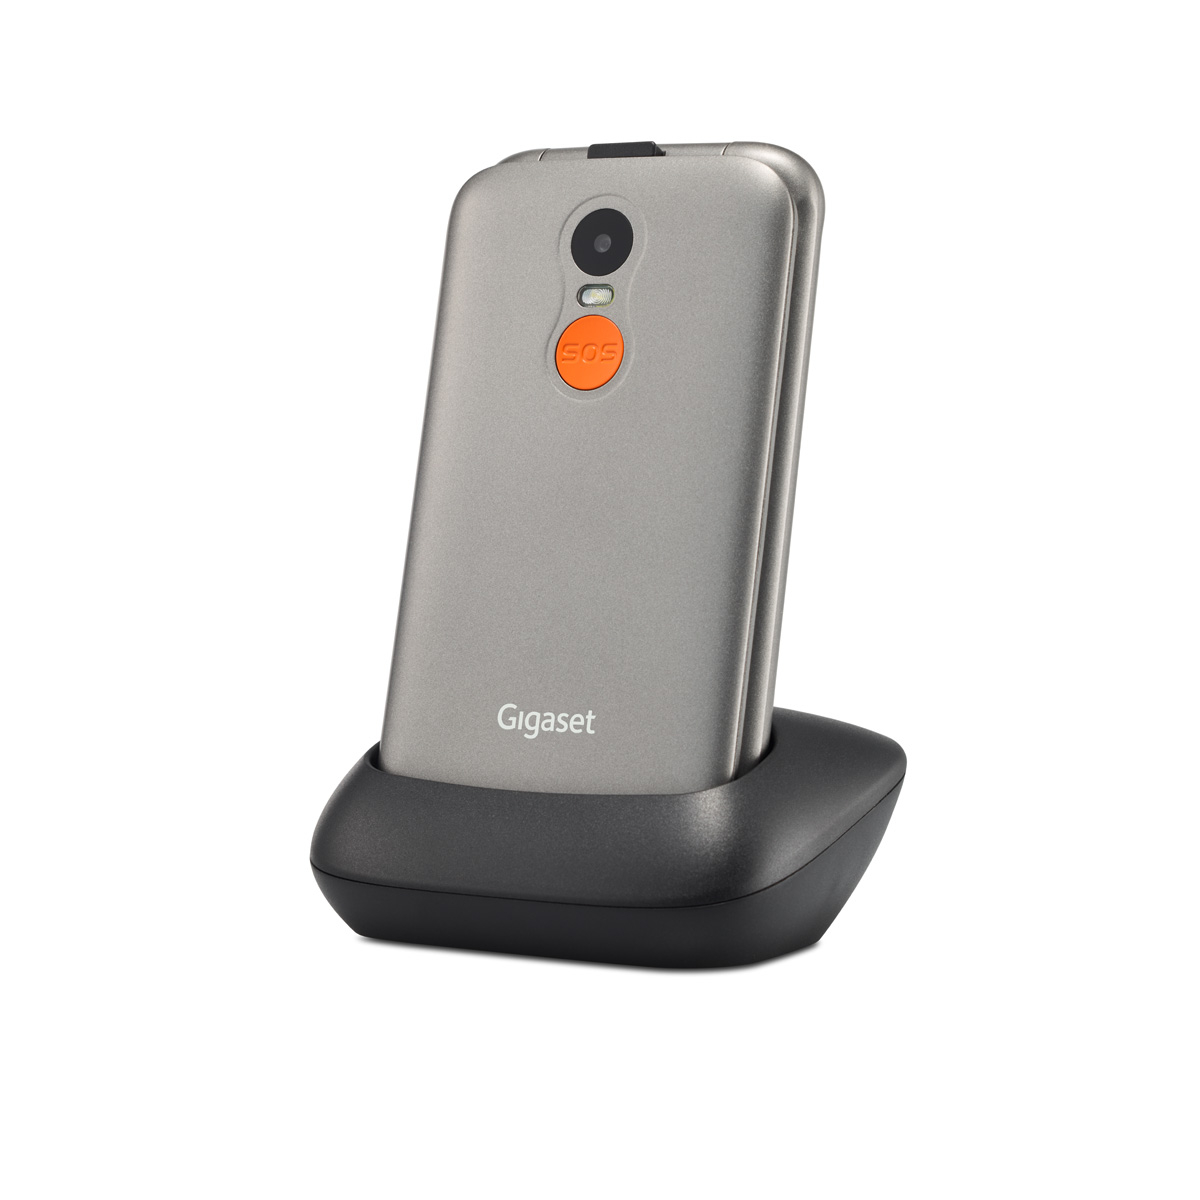 seniors the phone Discover GL590 flip Gigaset for